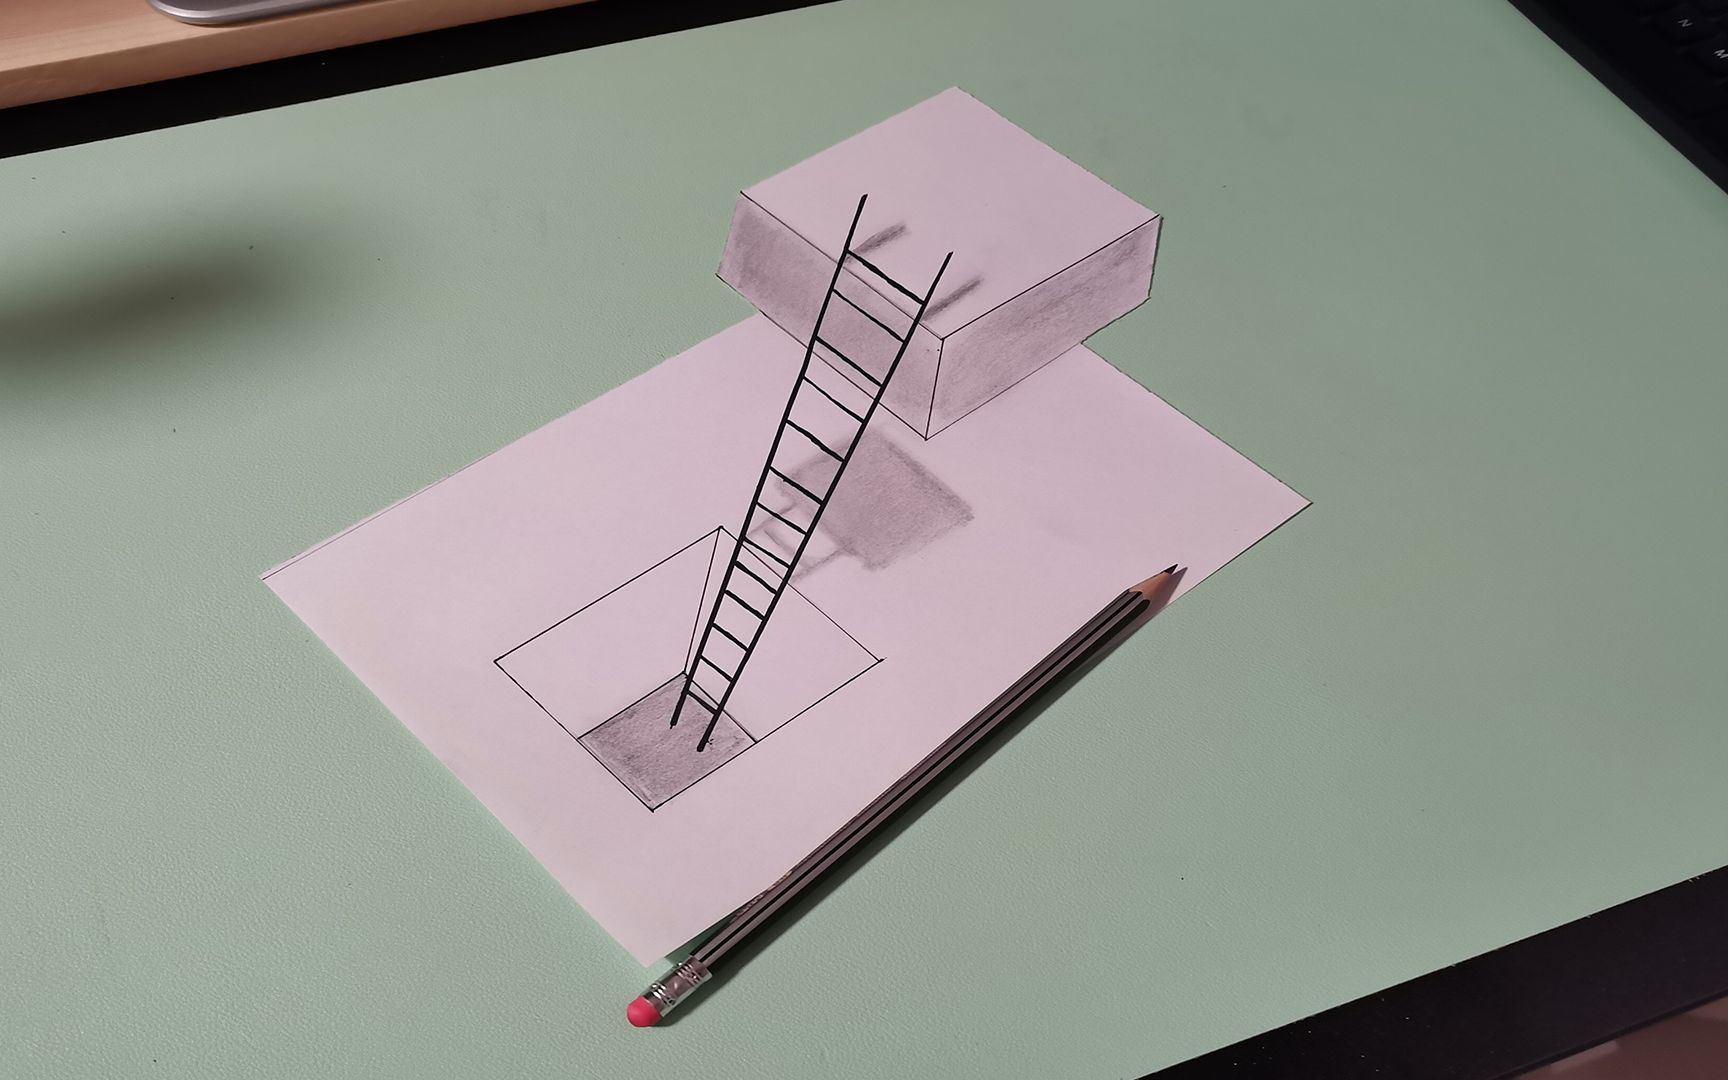 3d立体梯子的画法图片